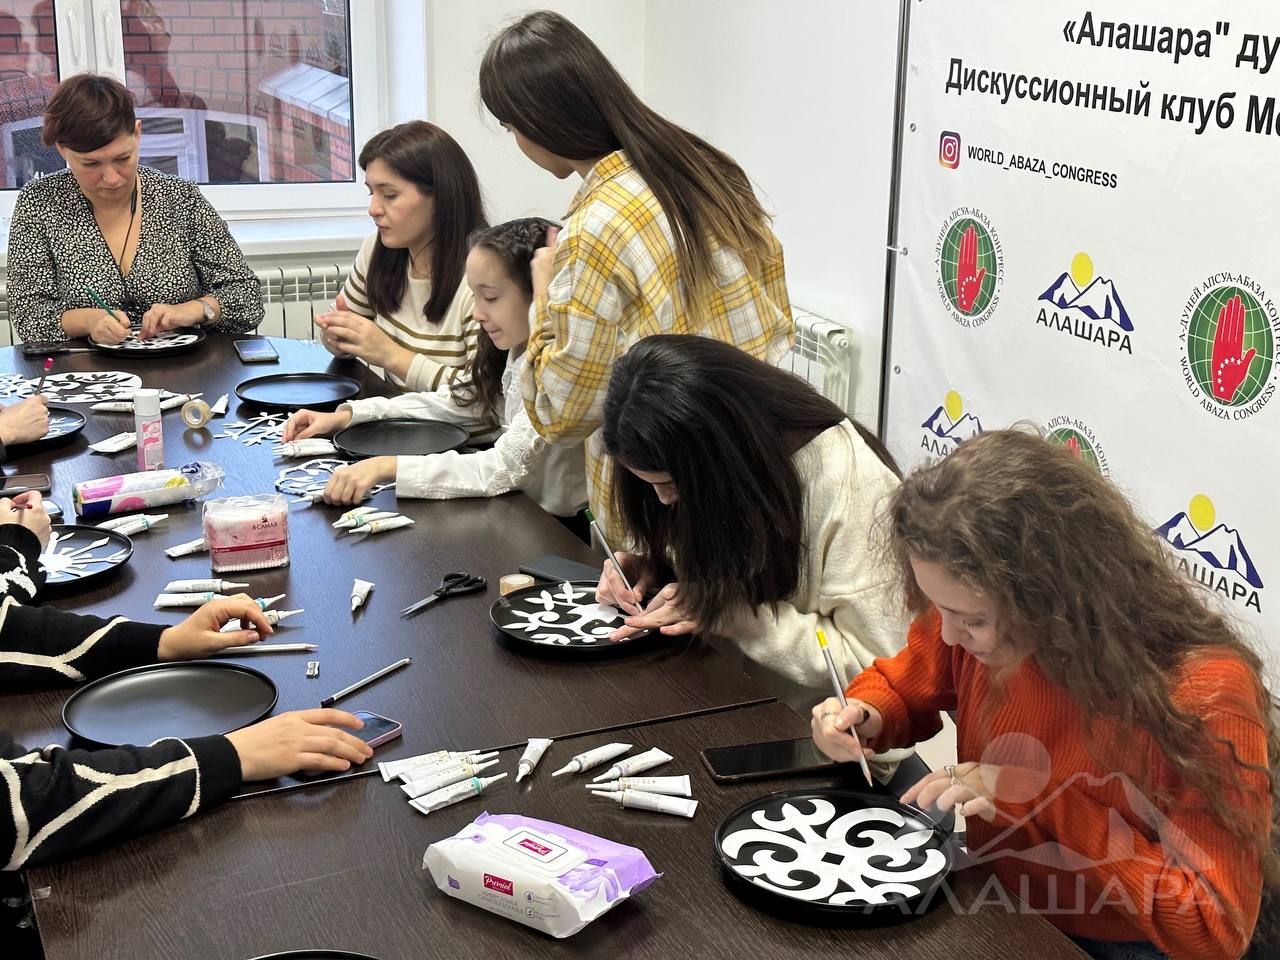 Заключительный мастер-класс по росписи на керамике прошёл в офисе АНО «Алашара»